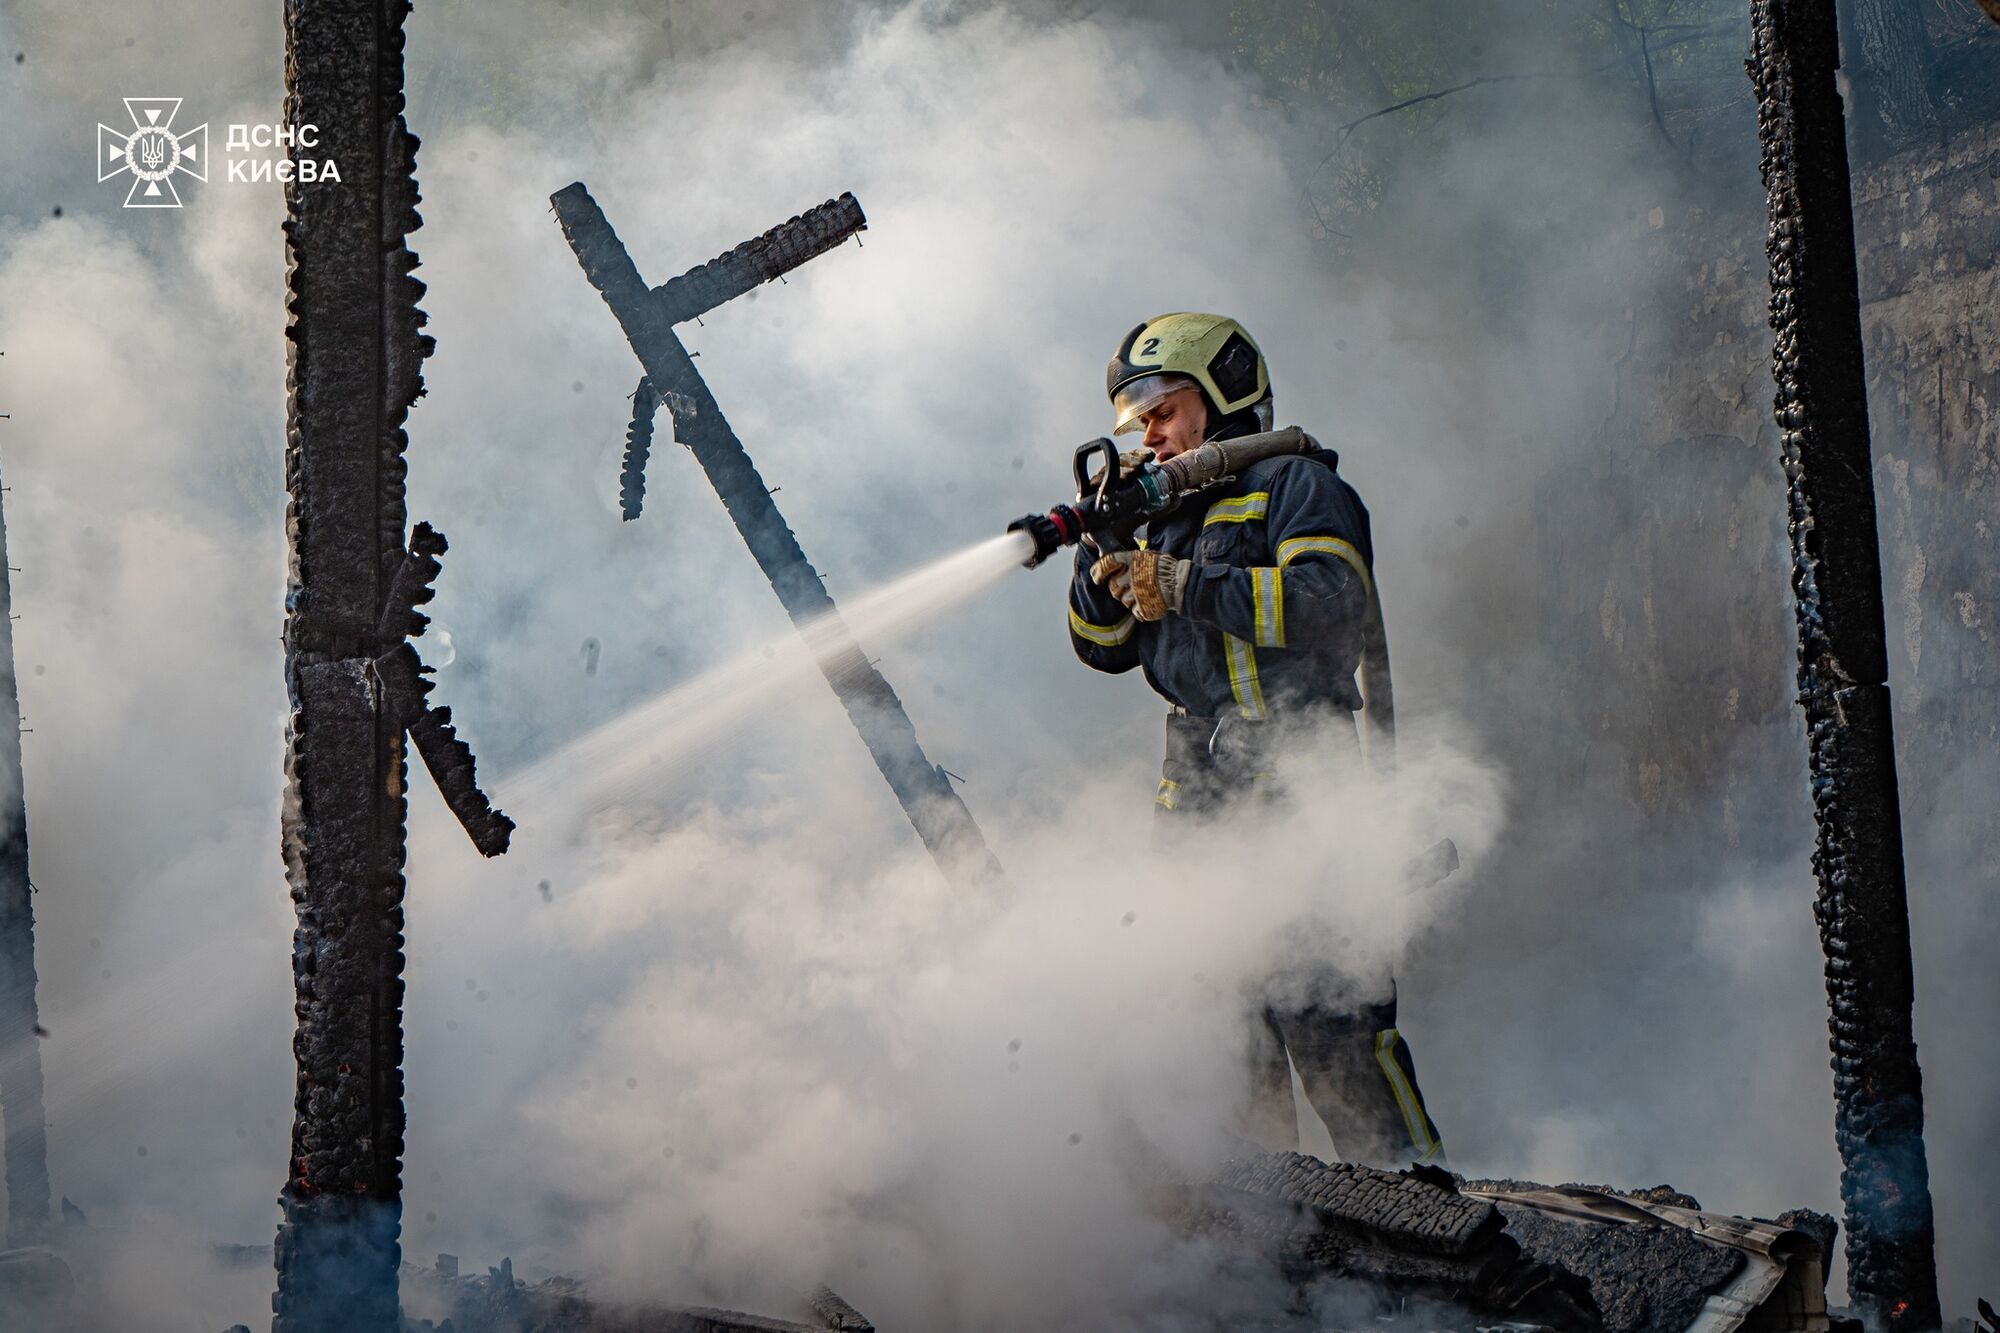 В Киеве на Подоле возле памятника Магдебургскому праву произошел пожар. Подробности и фото